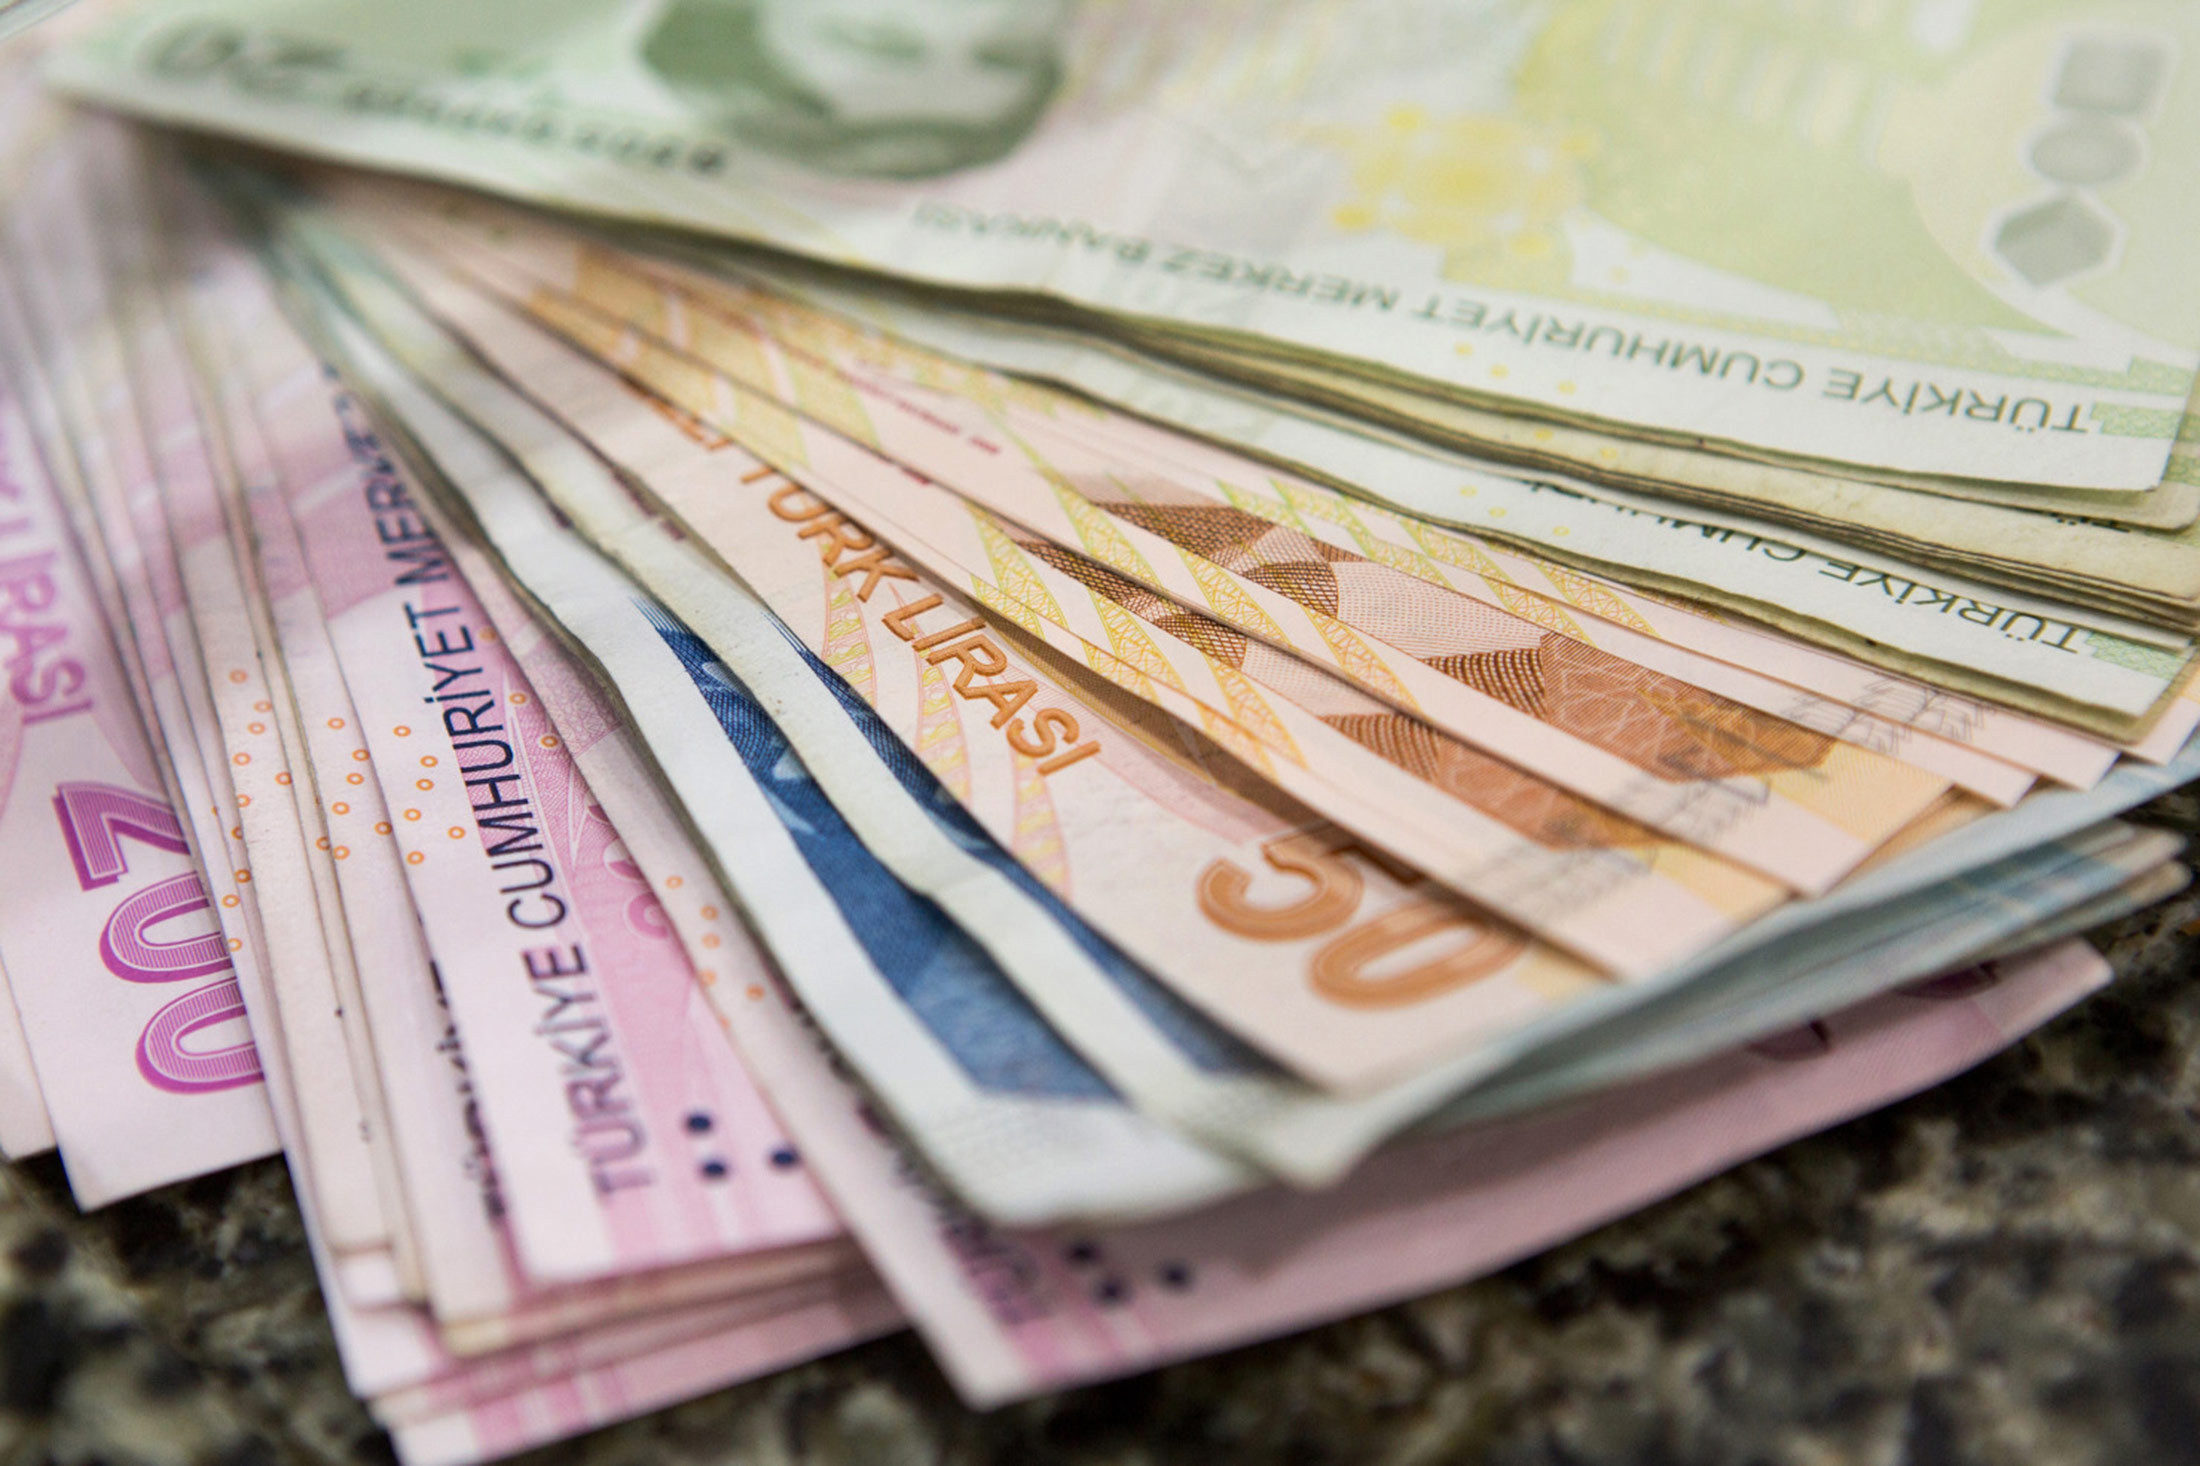 Hazine 7.4 milyar lira borçlandı